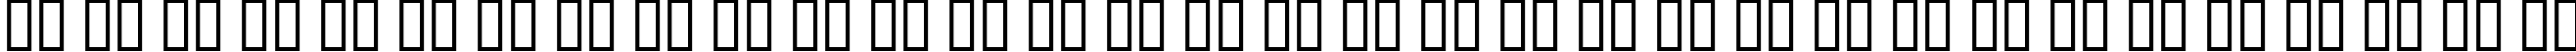 Пример написания русского алфавита шрифтом Schrill AOE Oblique